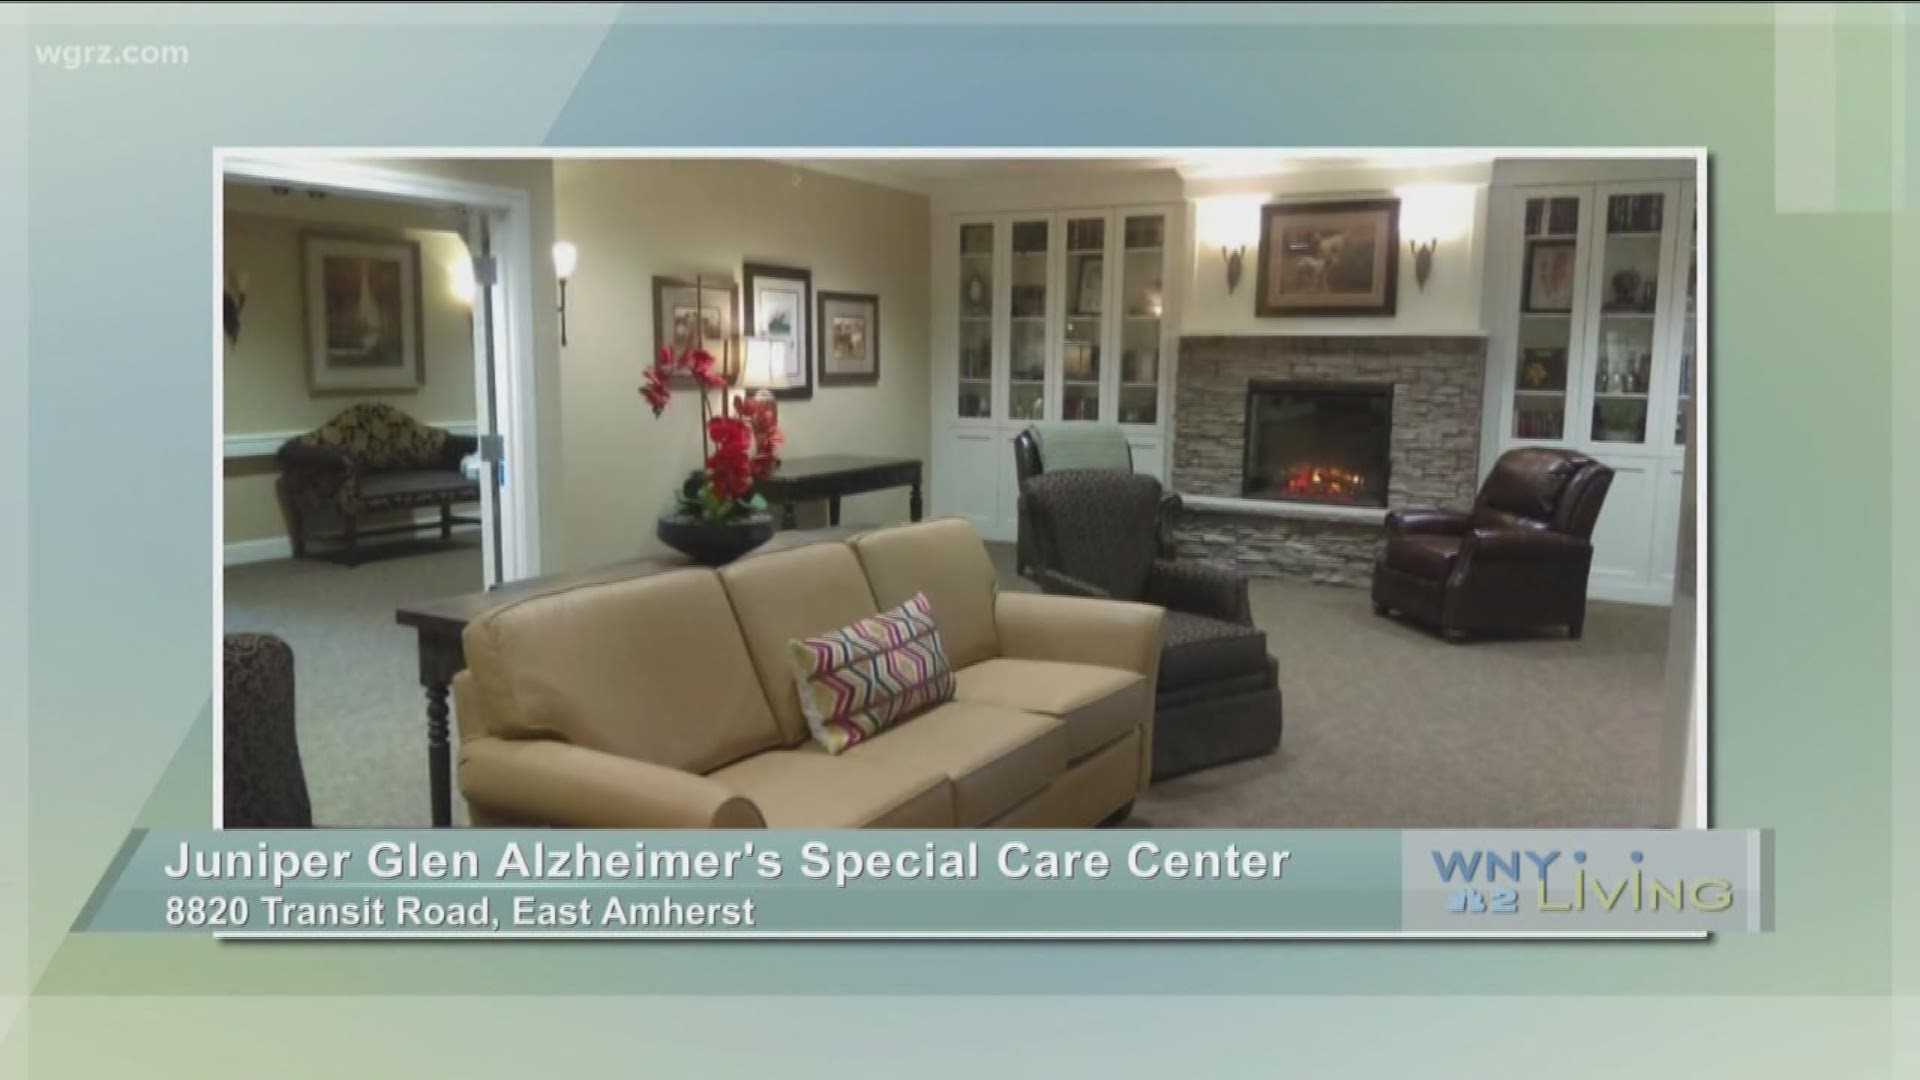 WNY Living - June 1 - Juniper Glen Alzheimer's Special Care Center (SPONSORED CONTENT)